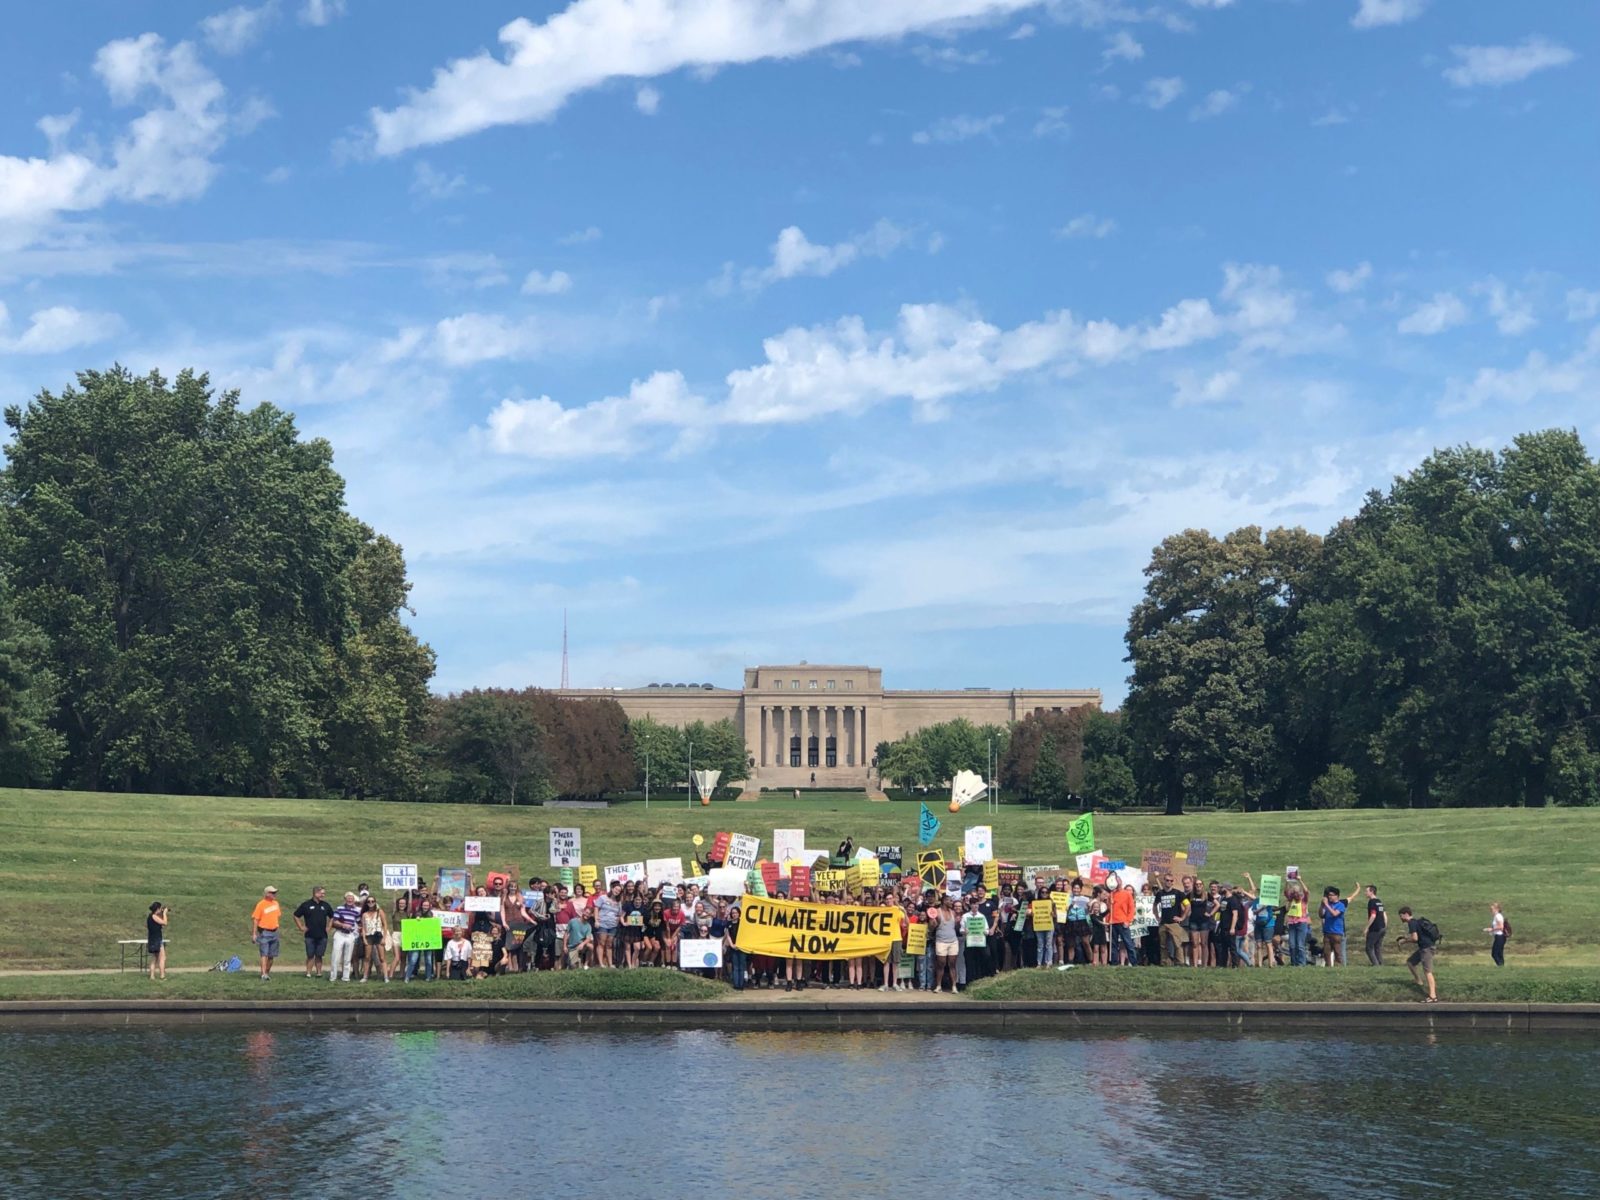 Uma reunião de pessoas durante a greve climática de setembro de 2019 em Kansas City.